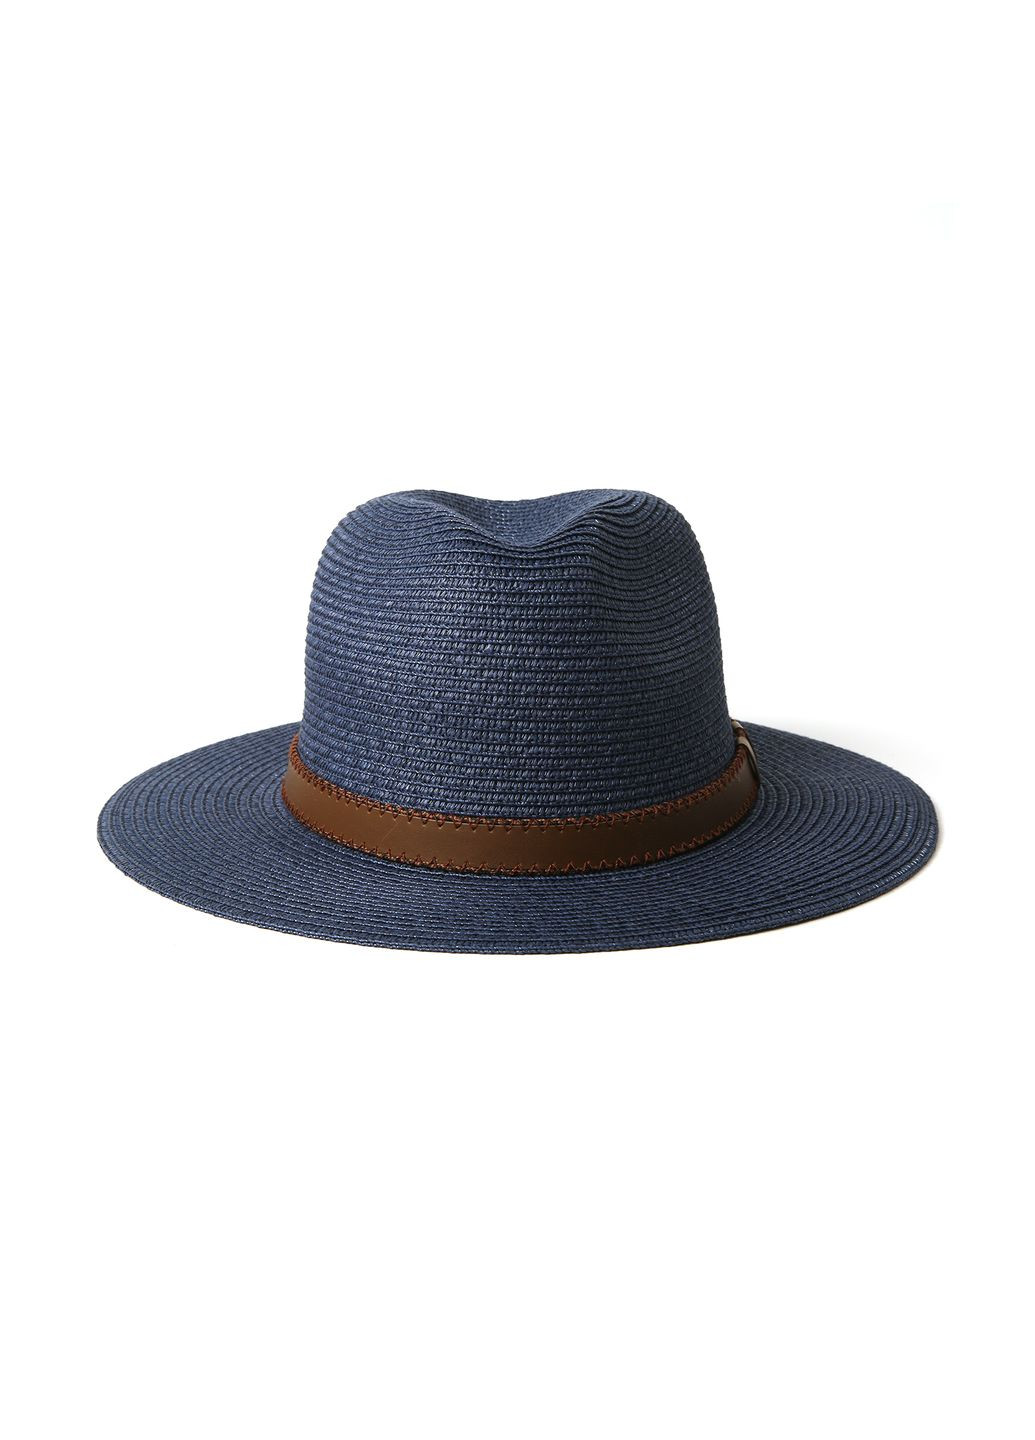 Шляпа федора мужская бумага синяя BAY 376-046 LuckyLOOK 376-046м (289478415)